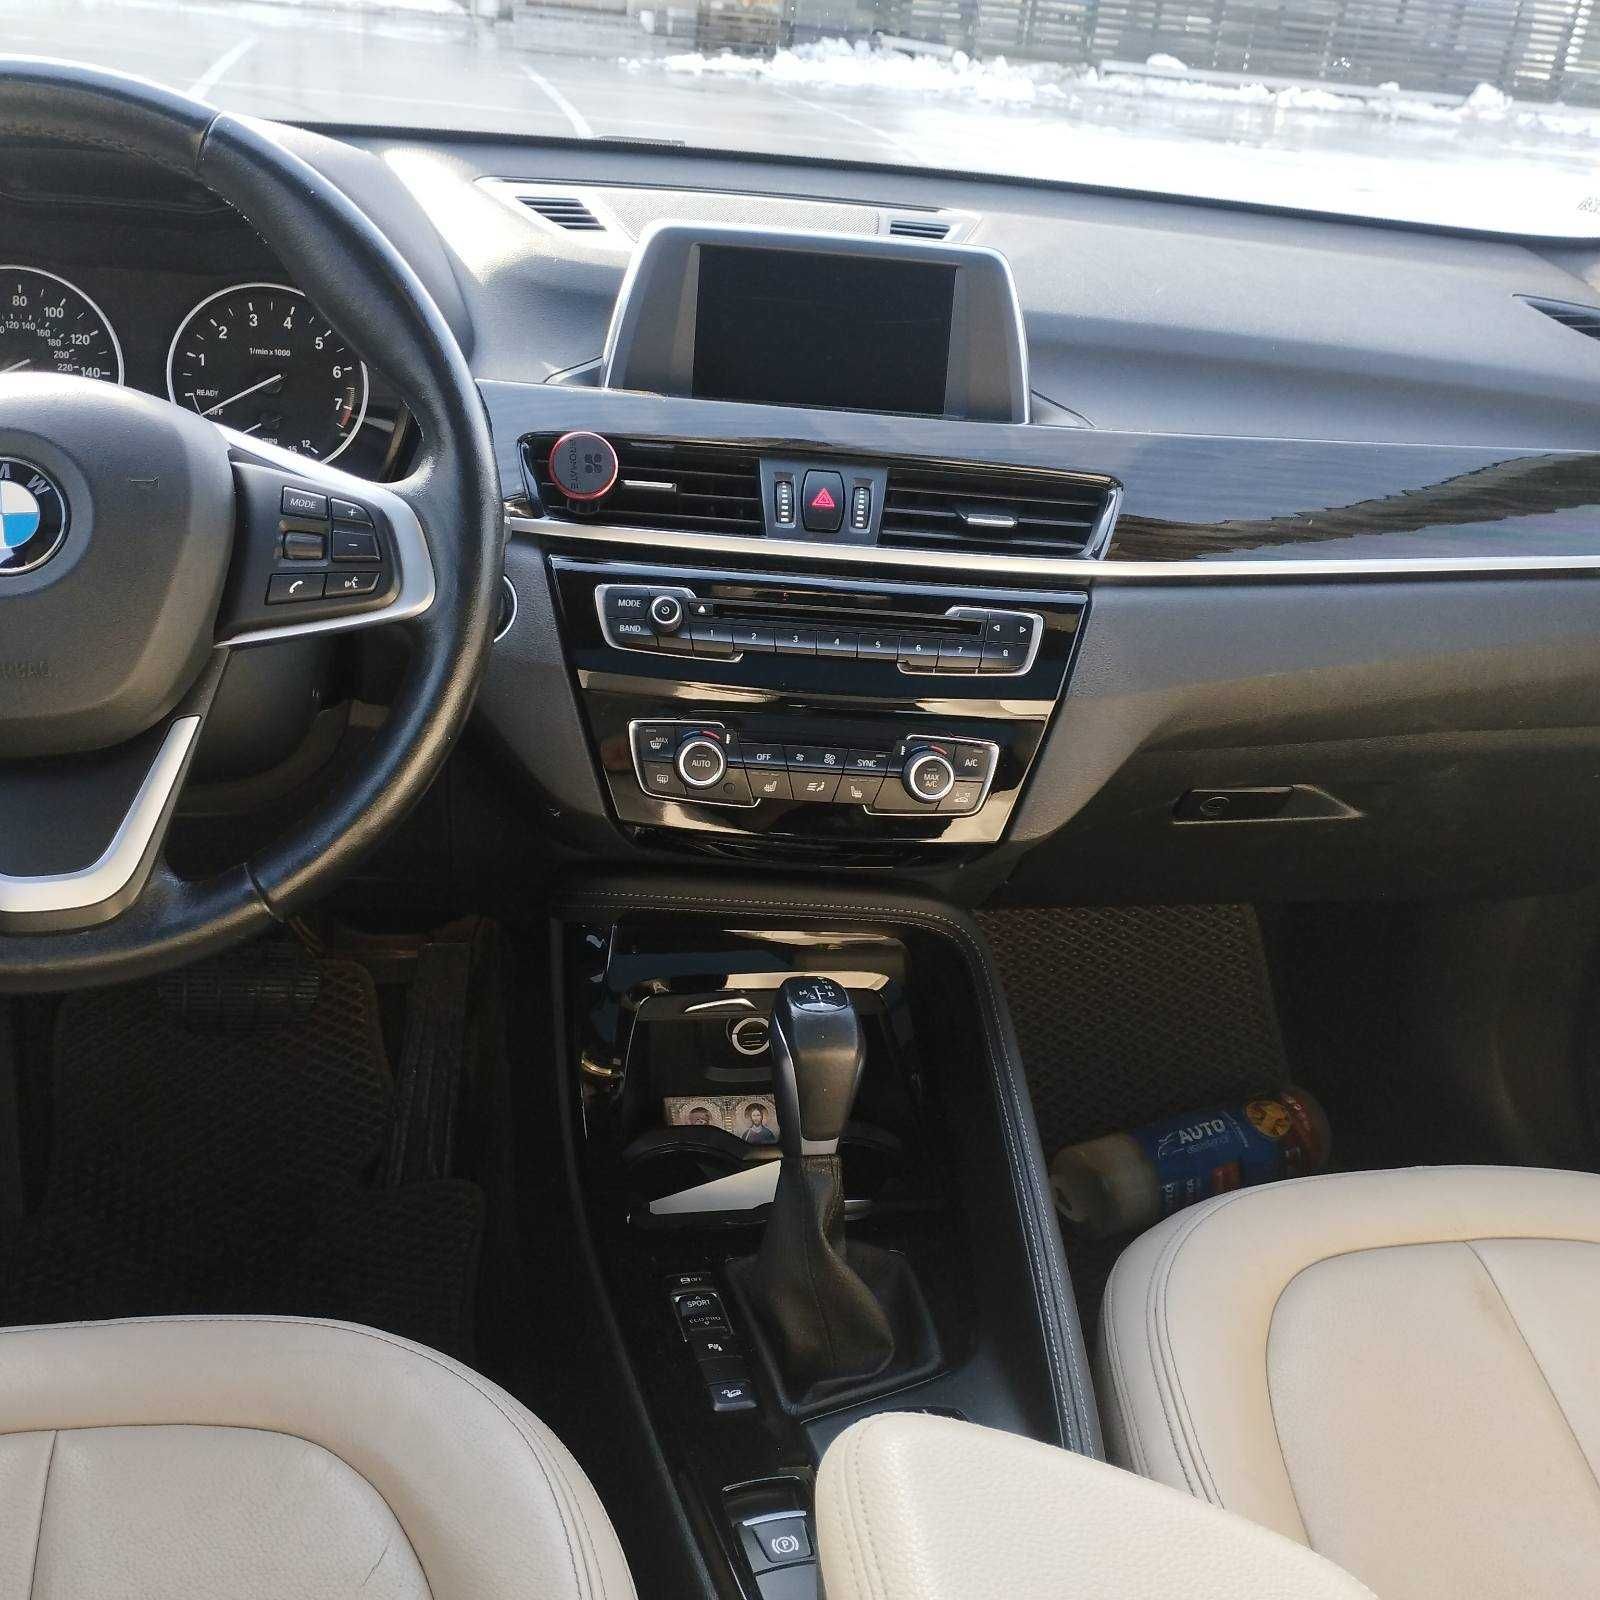 Продам BMW x1 2.0 F48 2016р.